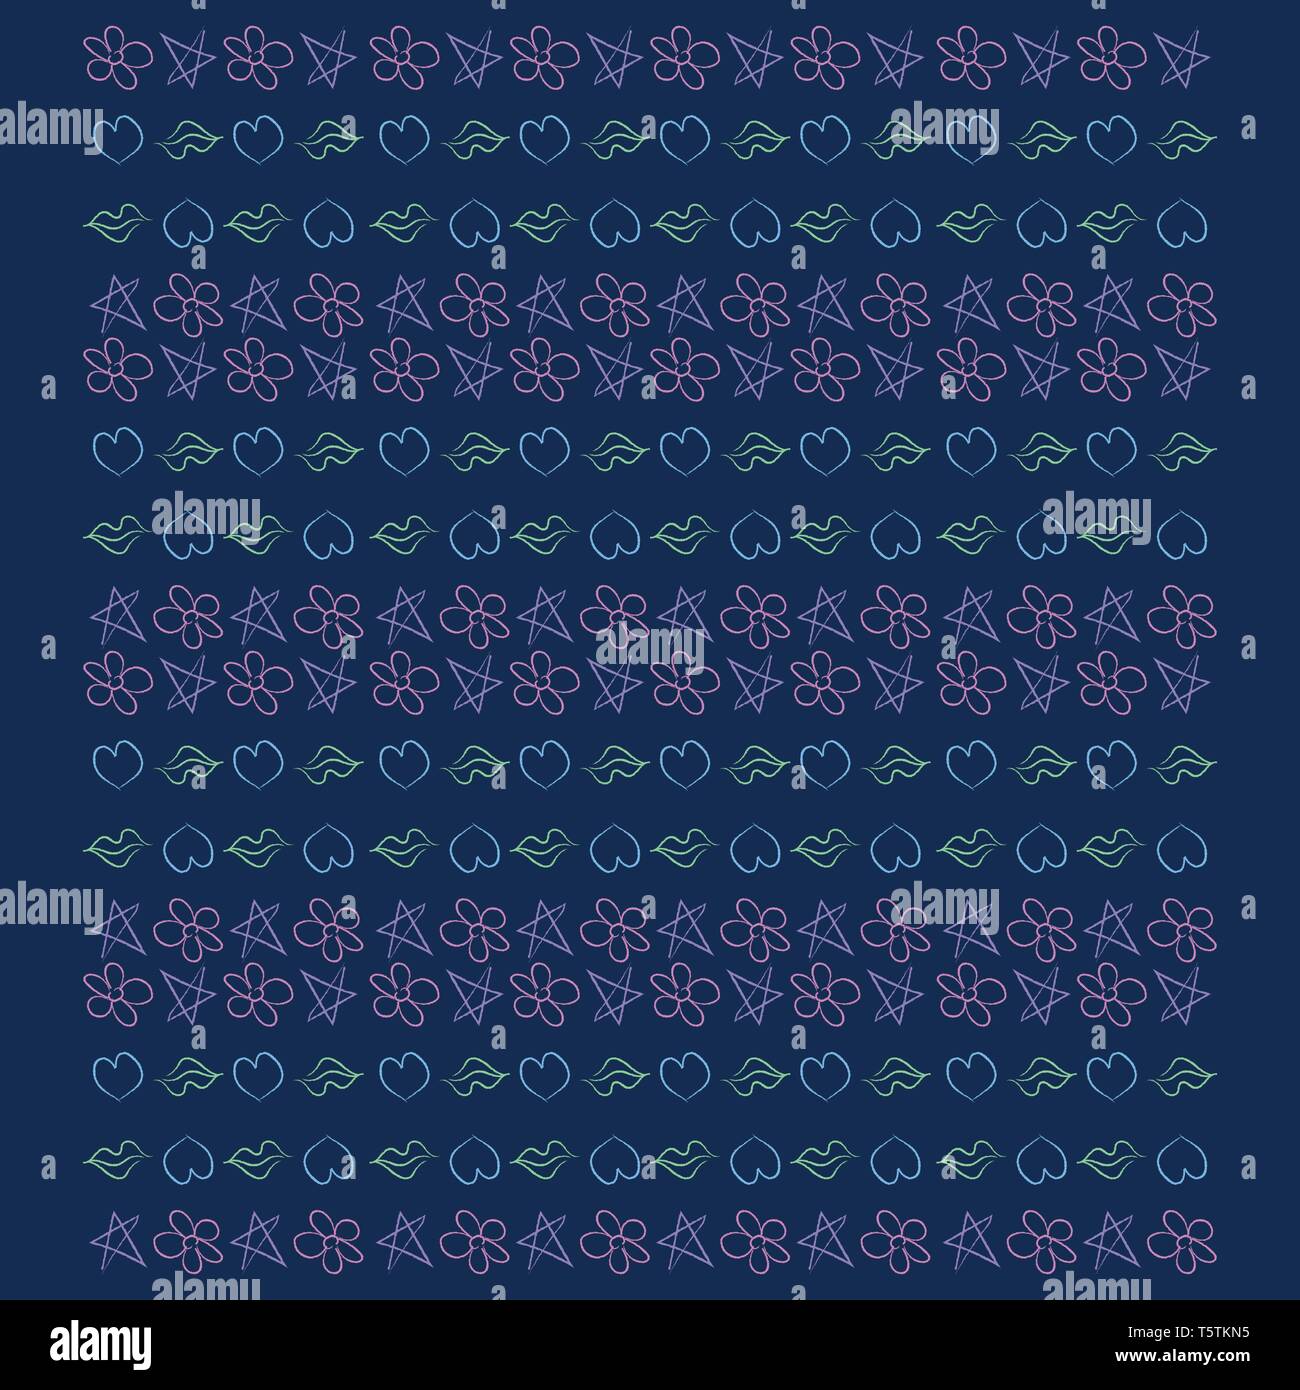 Un schéma régulier de lèvres étoiles fleurs et coeurs disposés en rangées sur un fond bleu lumineux de couleur ou de dessin vectoriel illustration Illustration de Vecteur